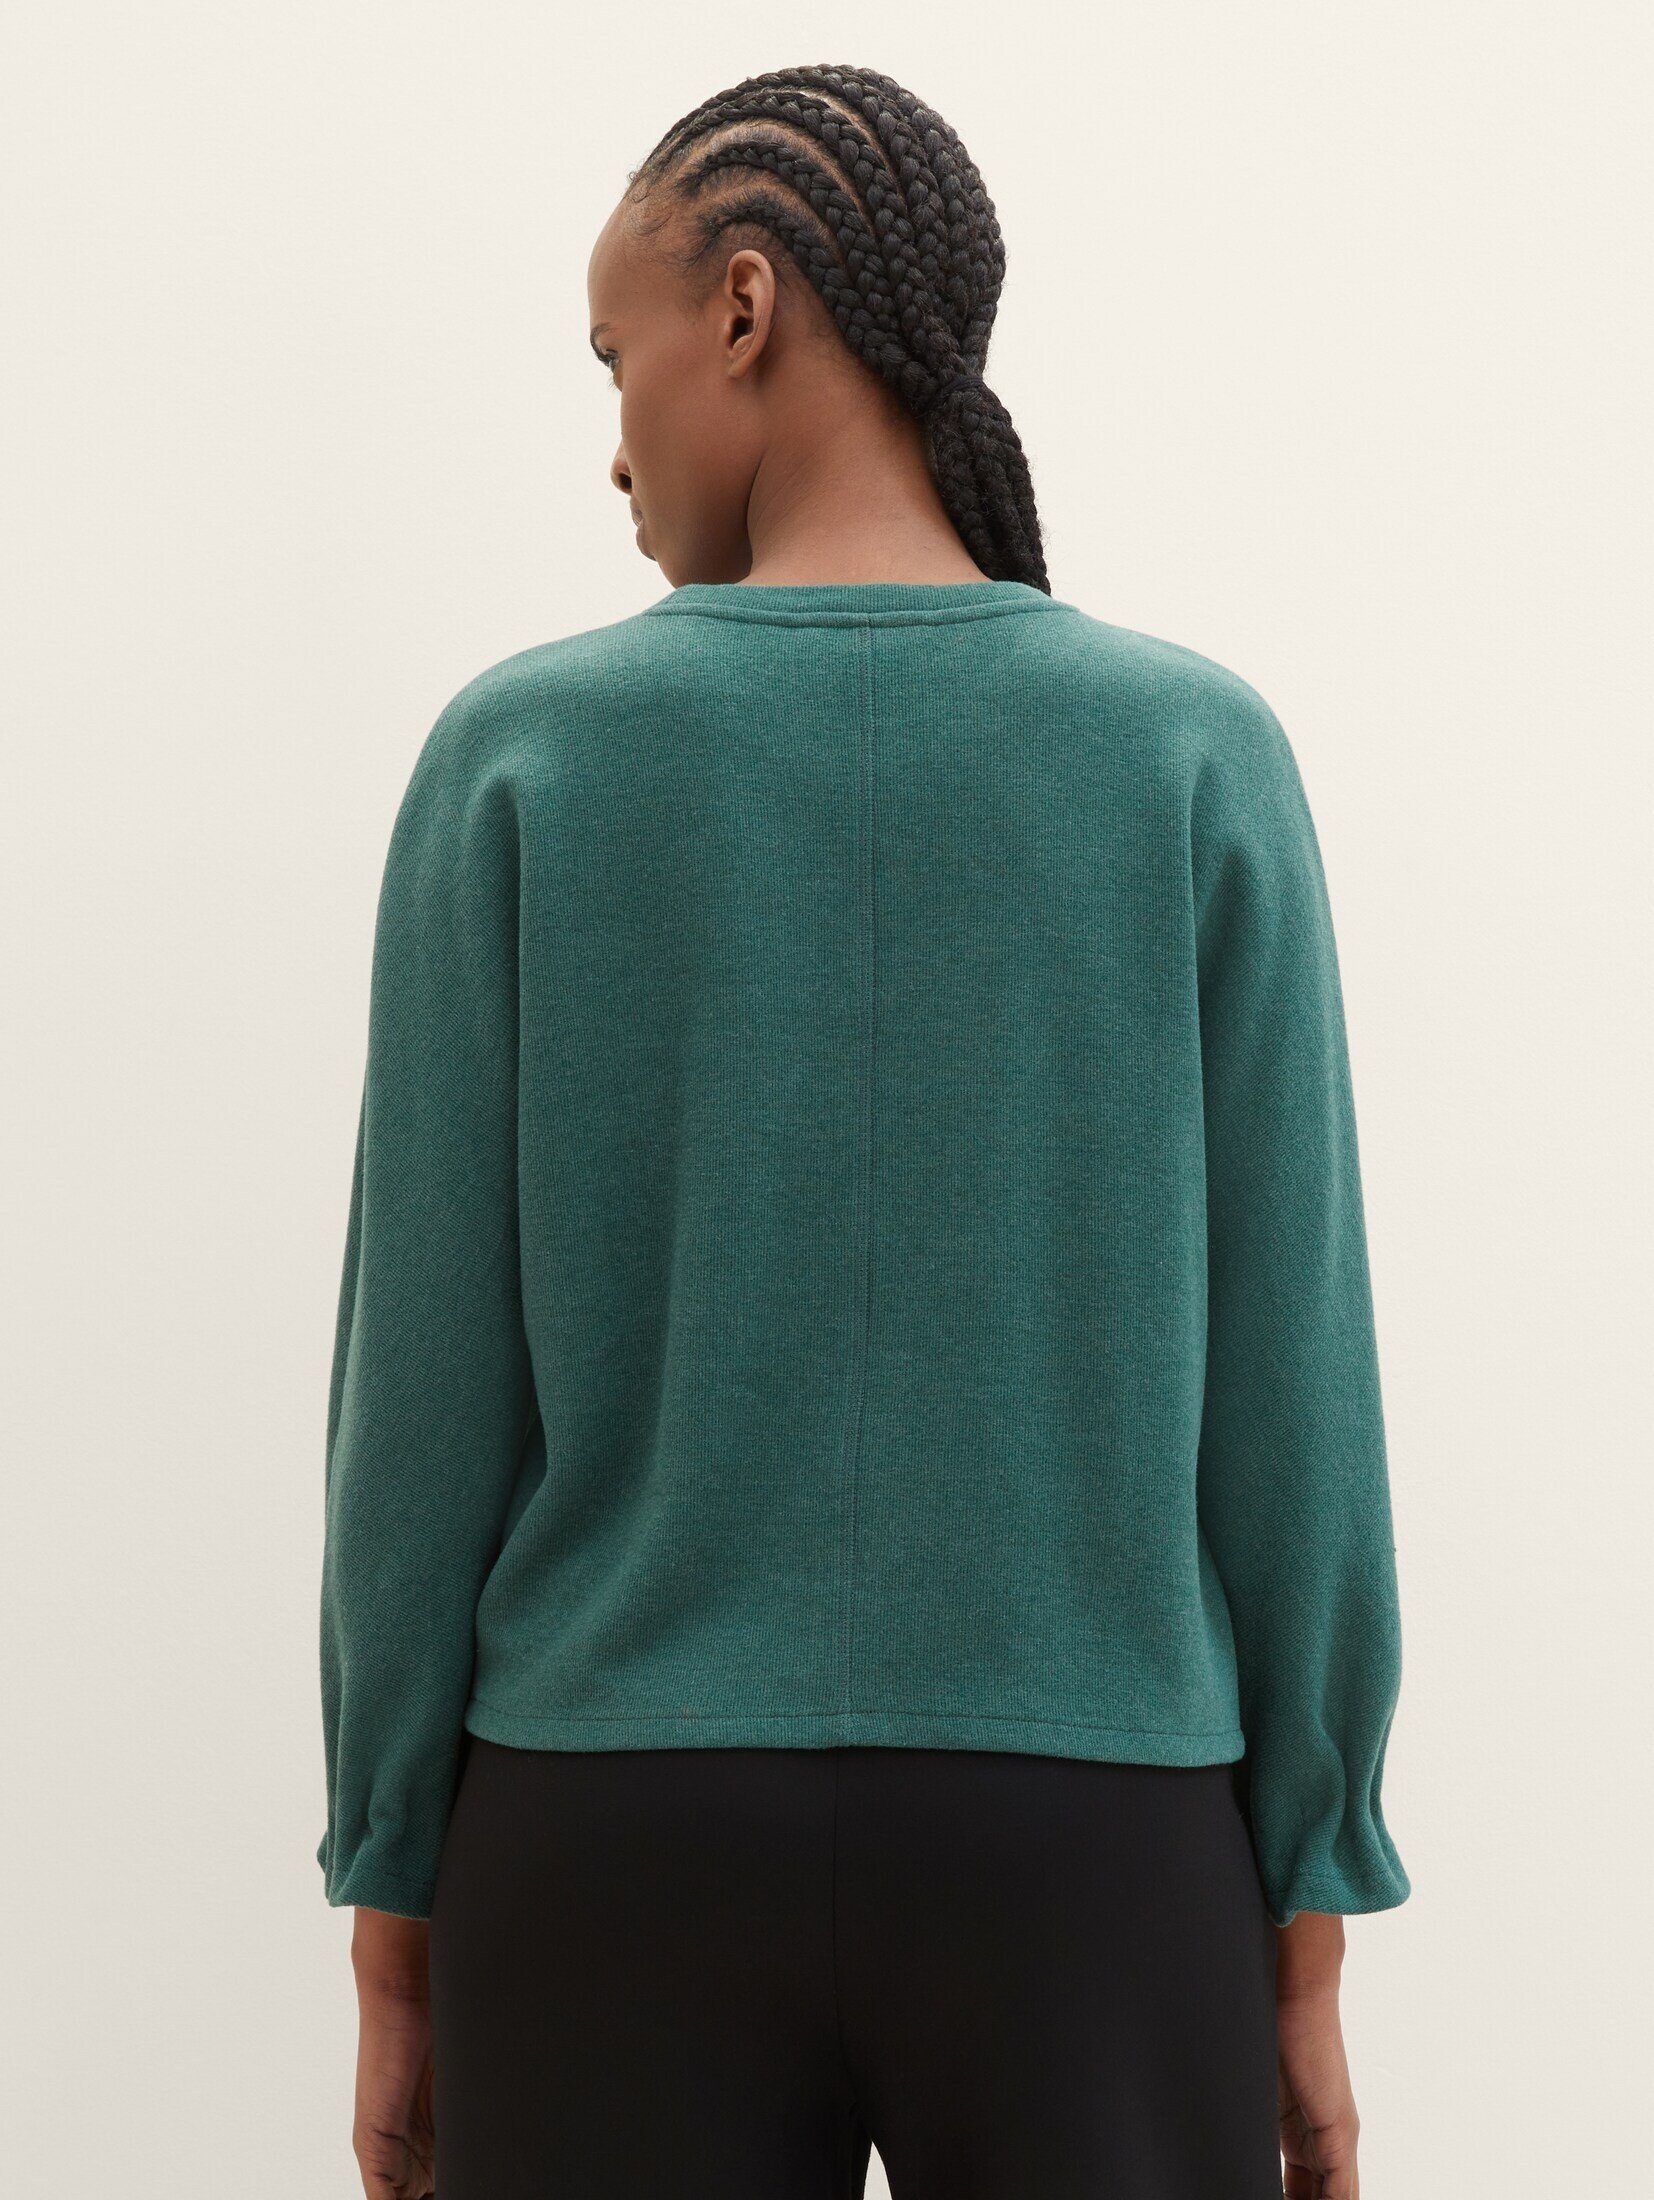 TAILOR mit Sweater TOM Denim dust Sweatshirt green melange Fledermausärmeln